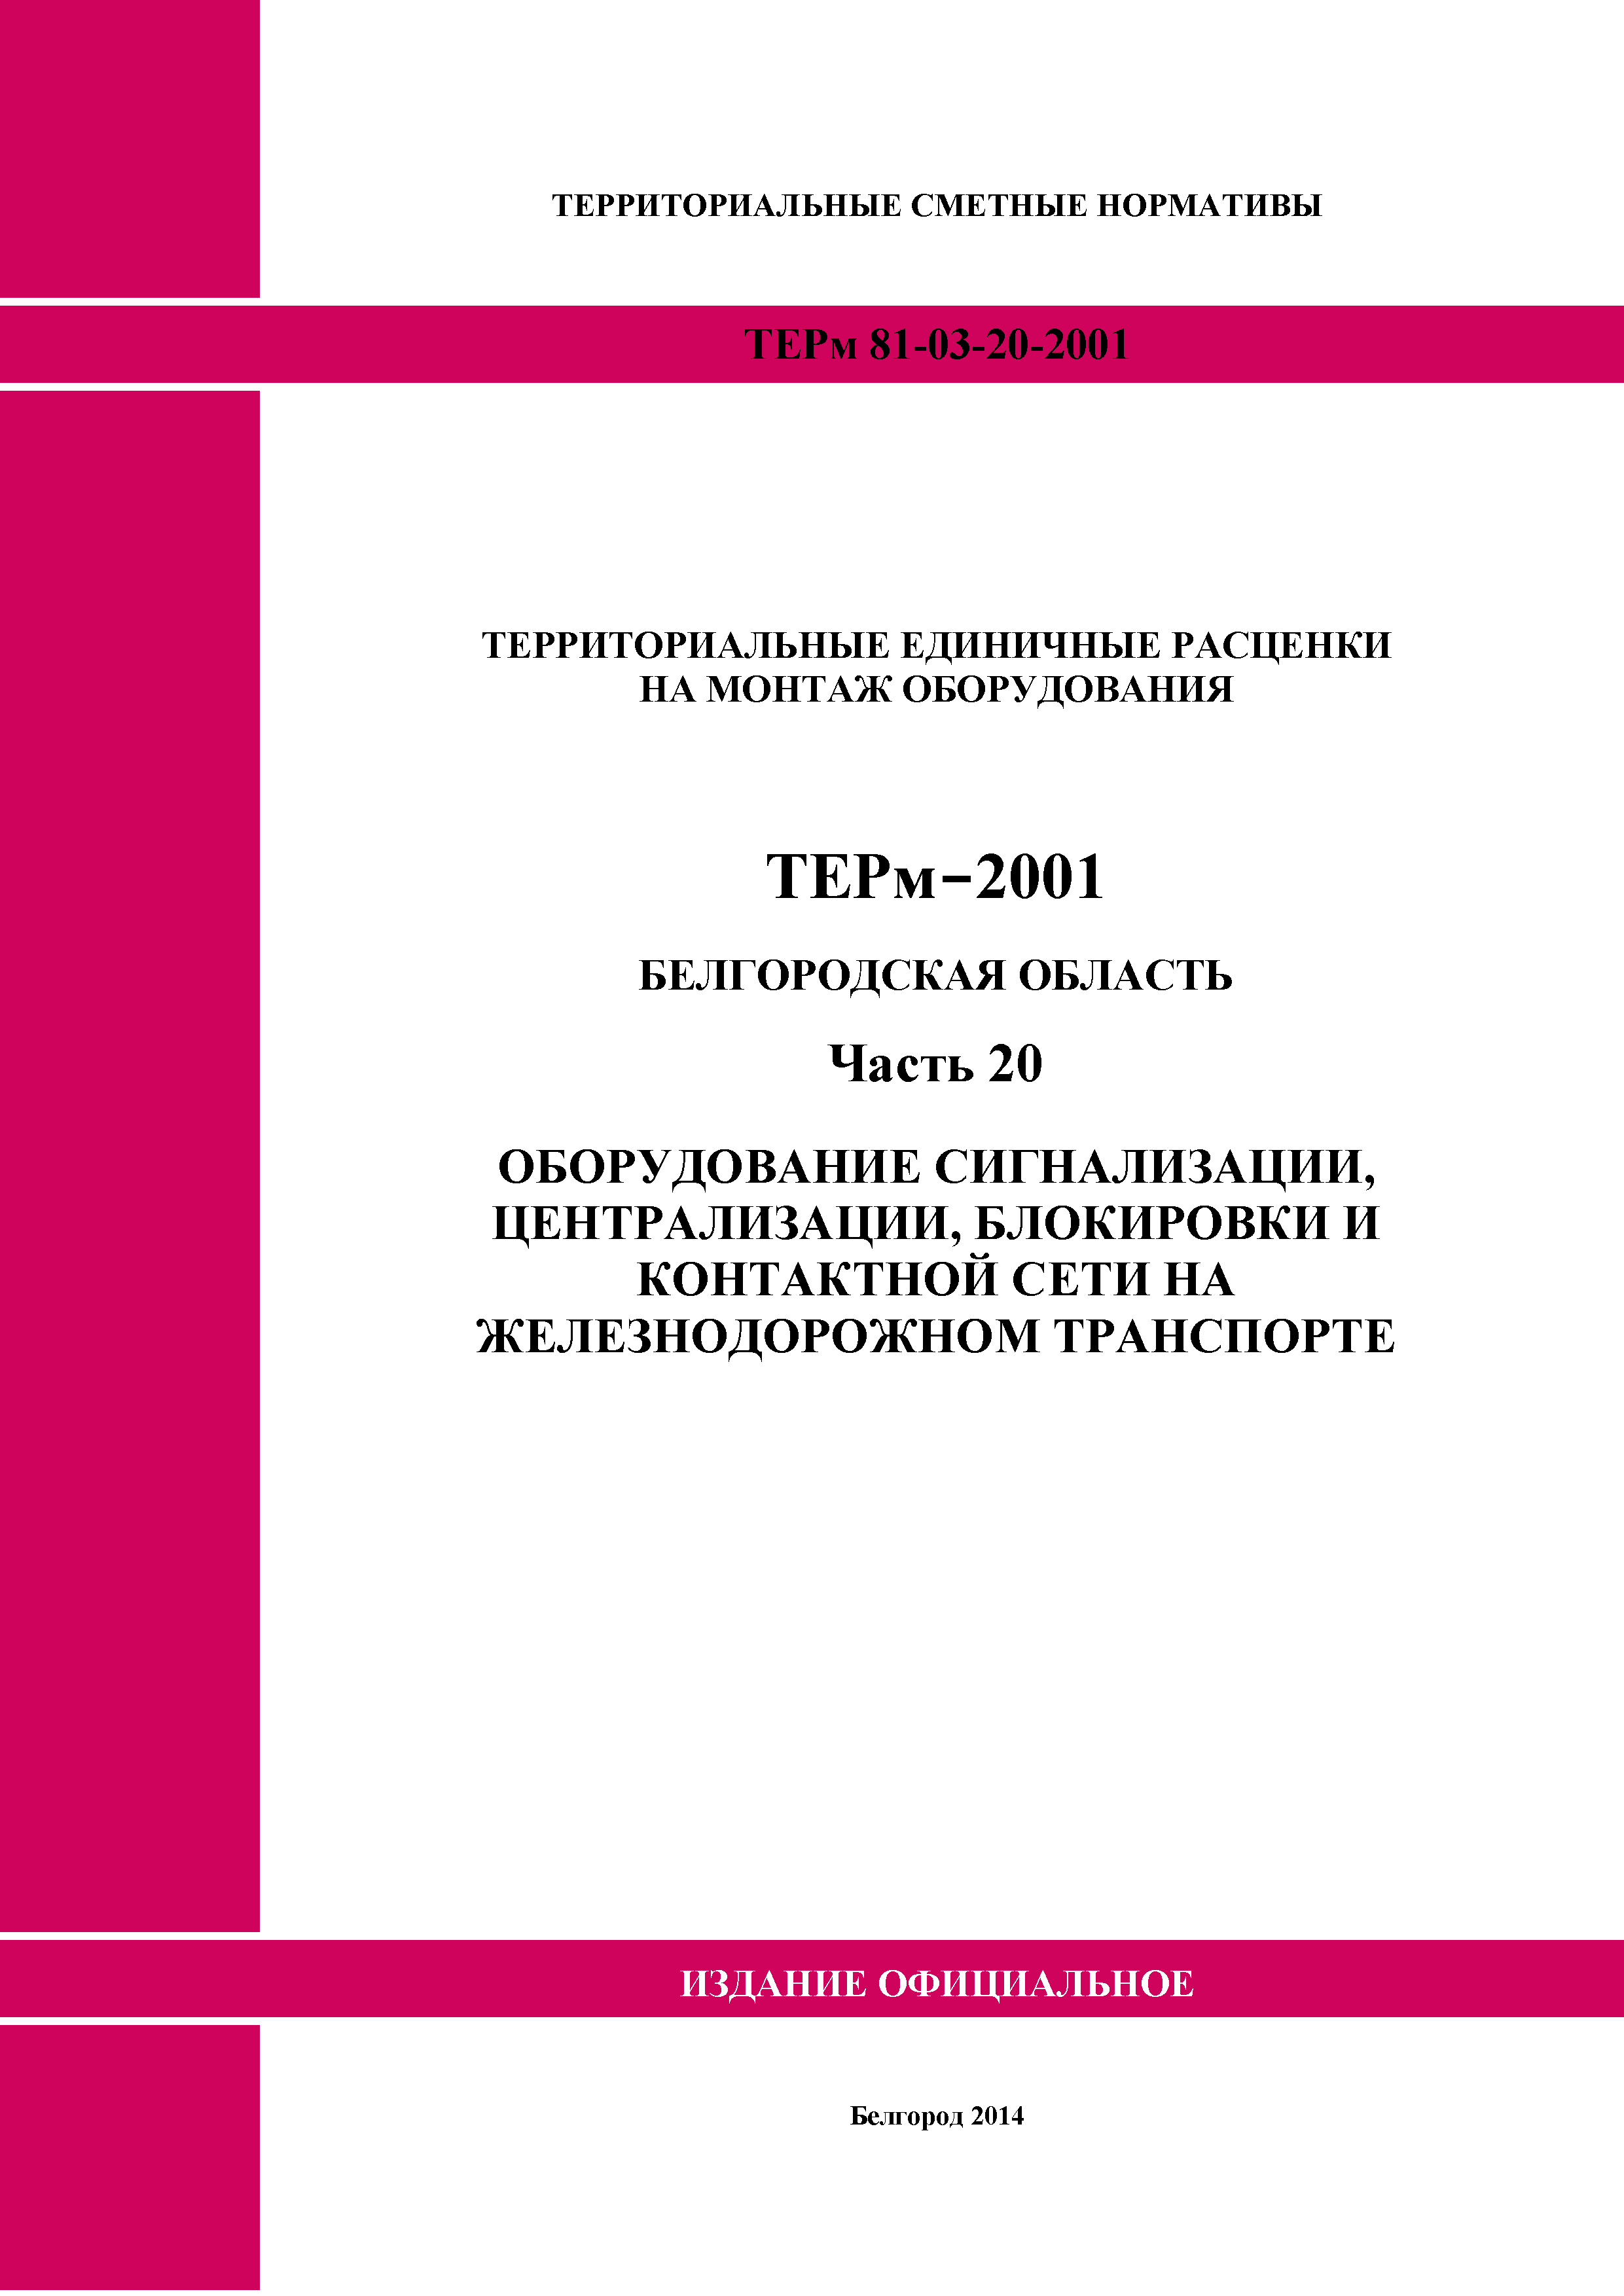 ТЕРм Белгородская область 81-03-20-2001